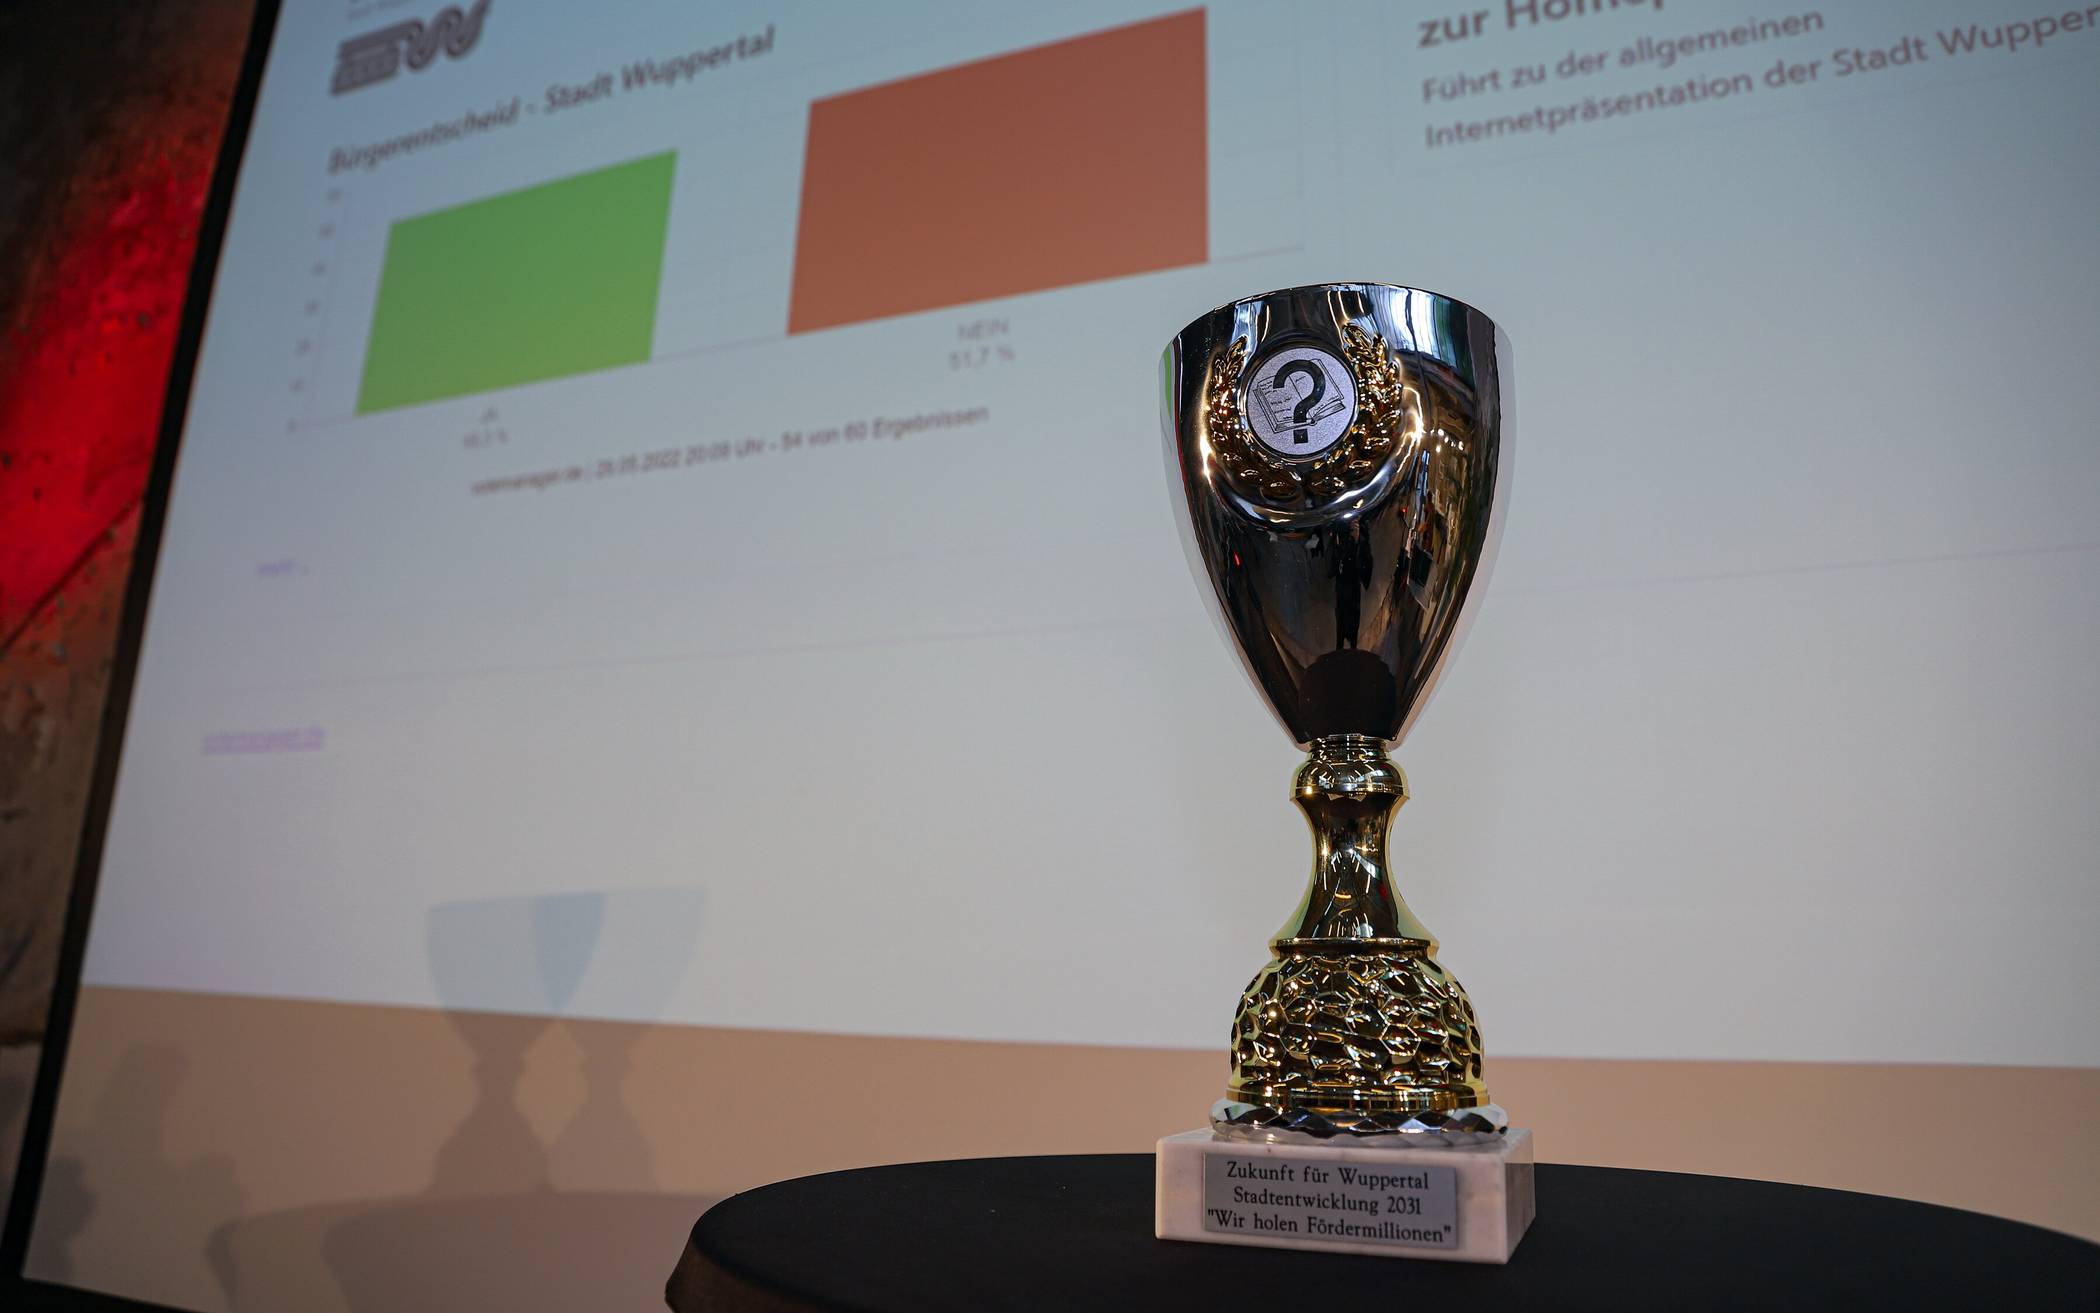  „Zukunft für Wuppertal - Stadtentwicklung 2018 - ,Wir holen Fördermillionen‘“ steht auf einem Pokal, den die BUGA-Befürworterinnen und -Befürworter bei ihrer Zusammenkunft in den ELBA-Hallen präsentierten. 